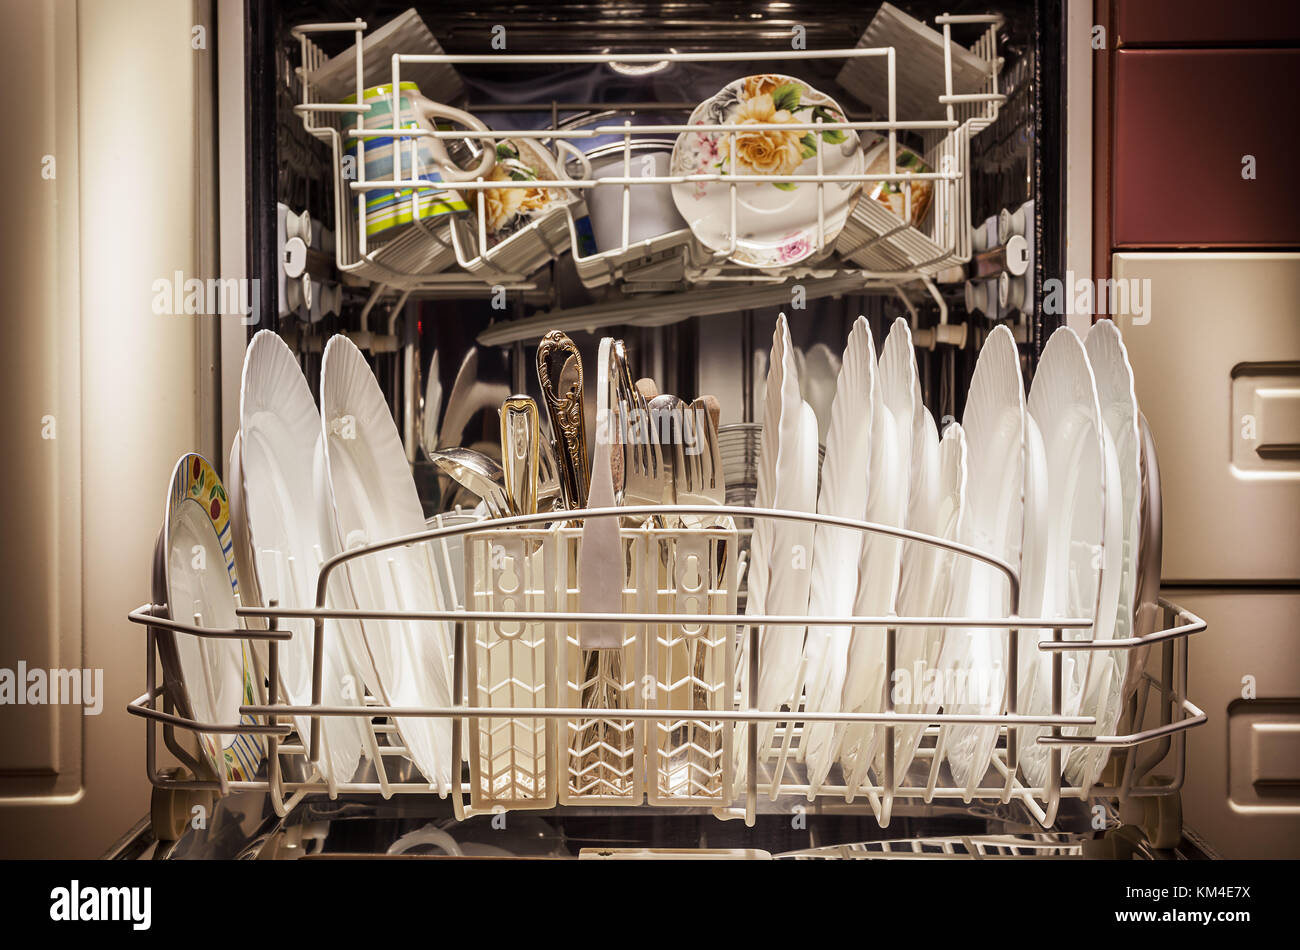 Platos limpios y accesorios en el lavavajillas después de lavar. Foto de stock